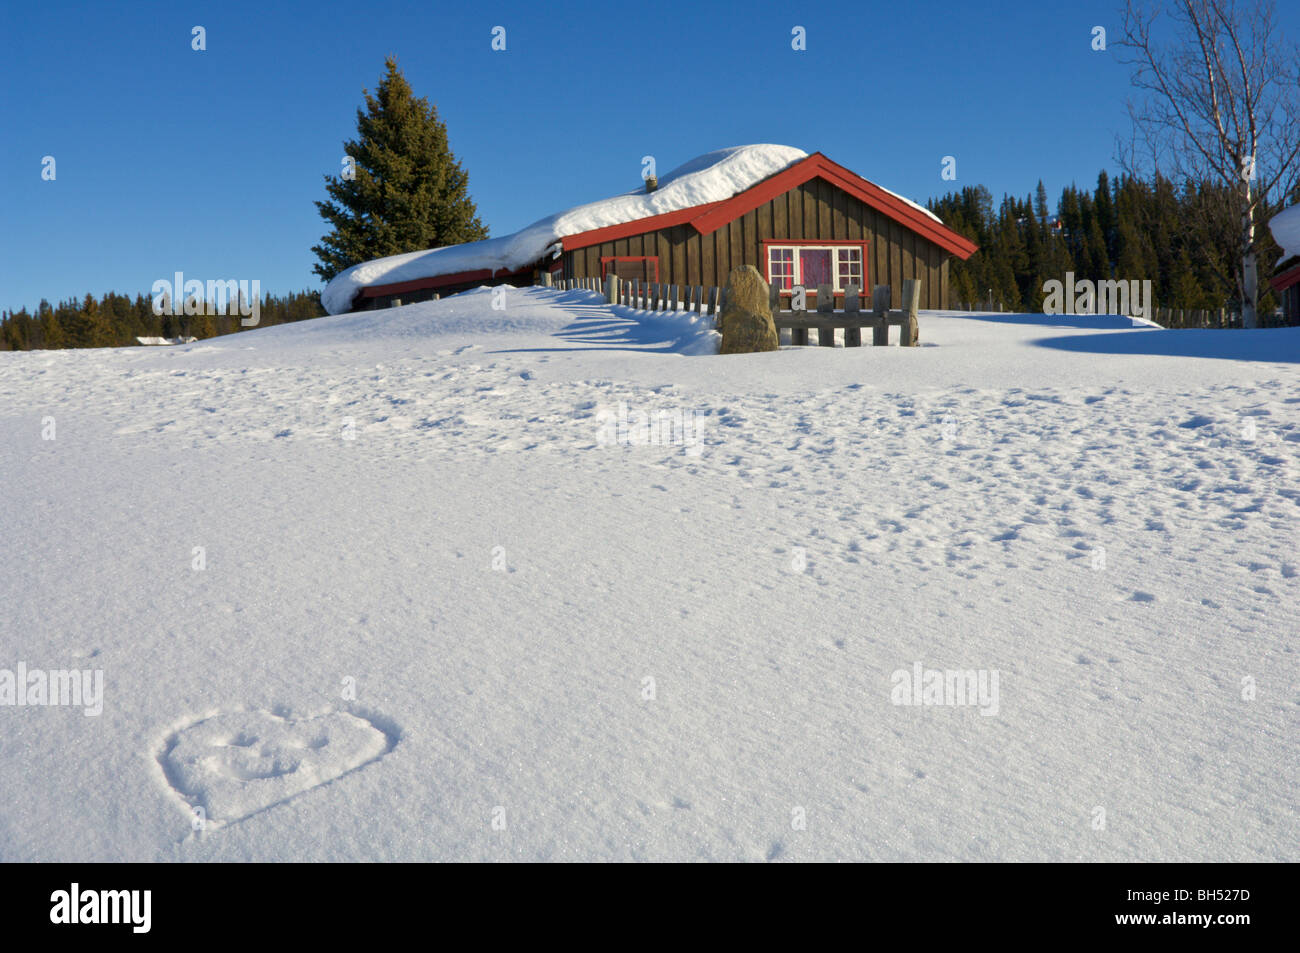 Ferienchalet mit Schnee und einen herzförmigen Smiley in den Schnee gezeichnet. Stockfoto